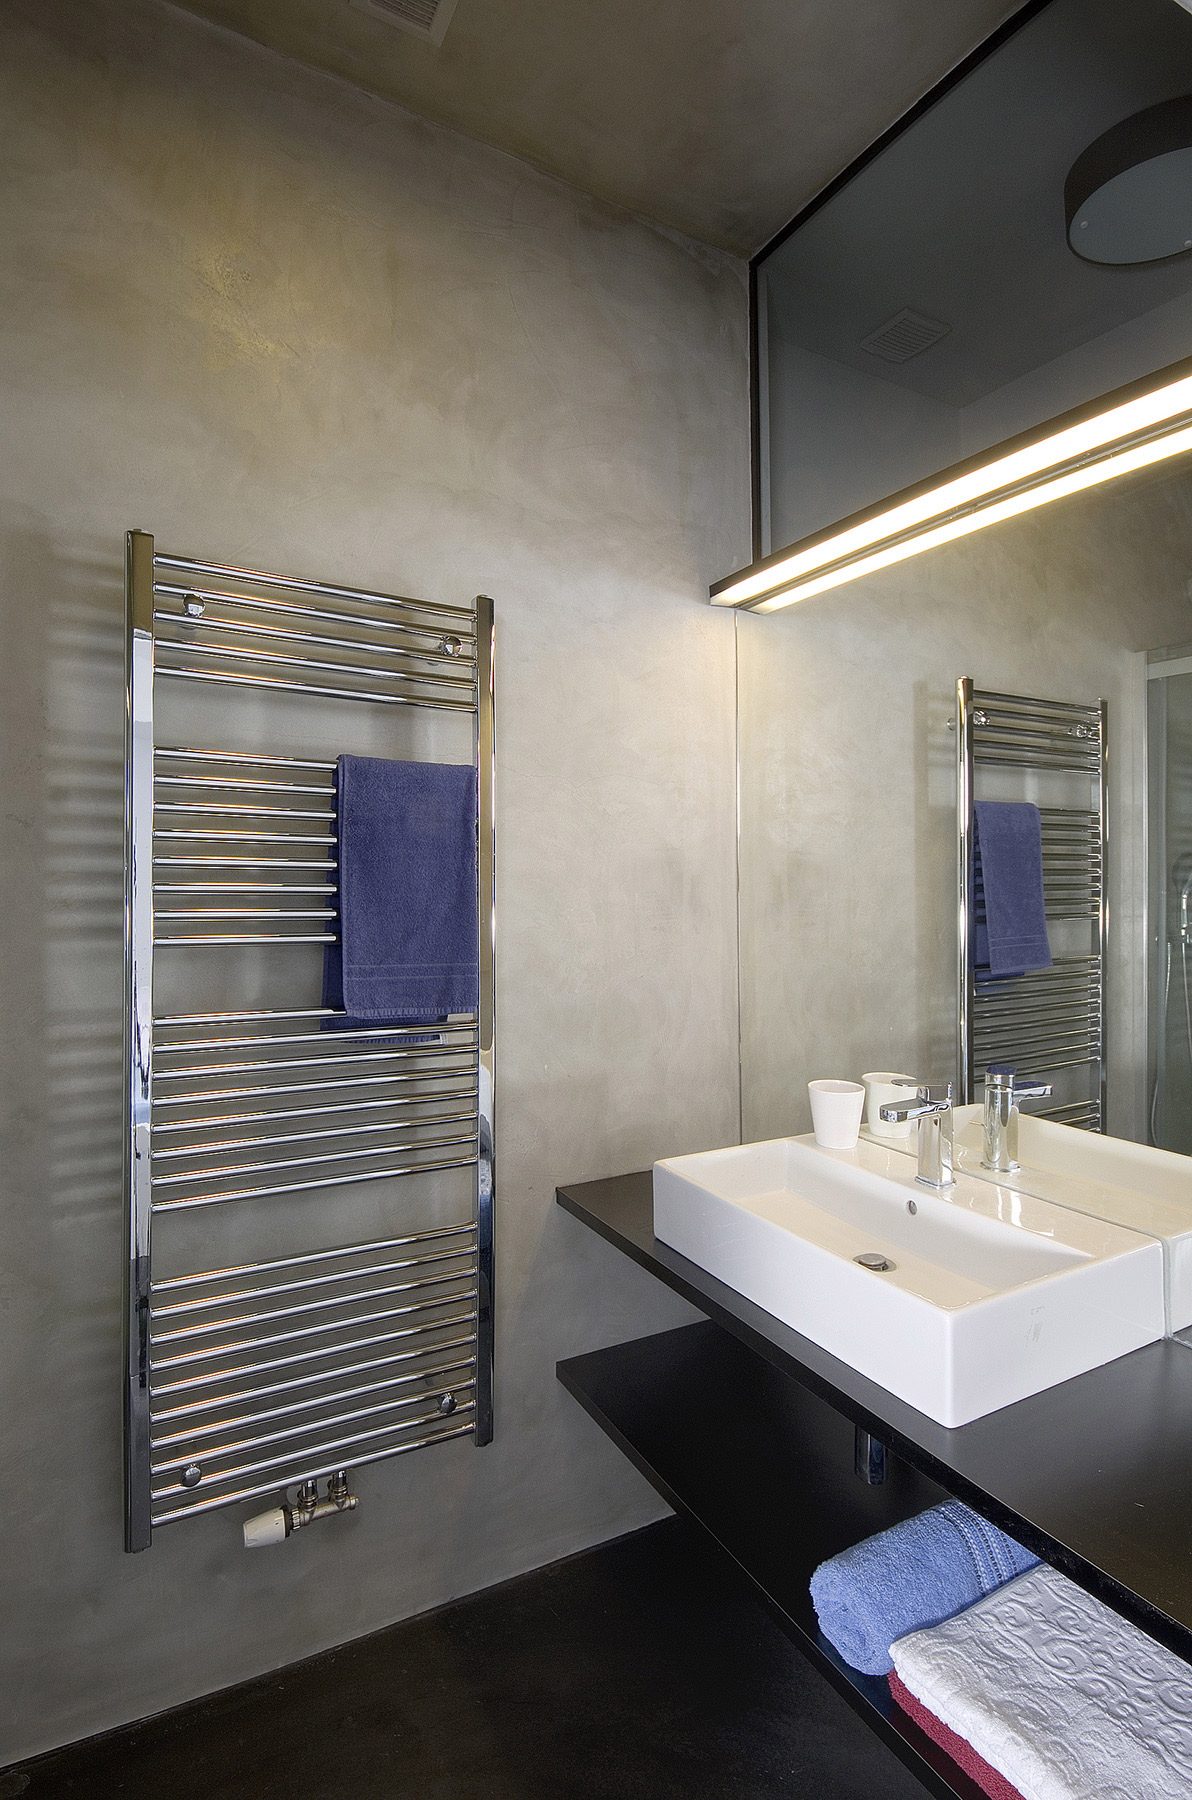 kúpeľňa s betónovou stierkou je presvetlená cez vedľajšiu miestnosť oknom pod stropom